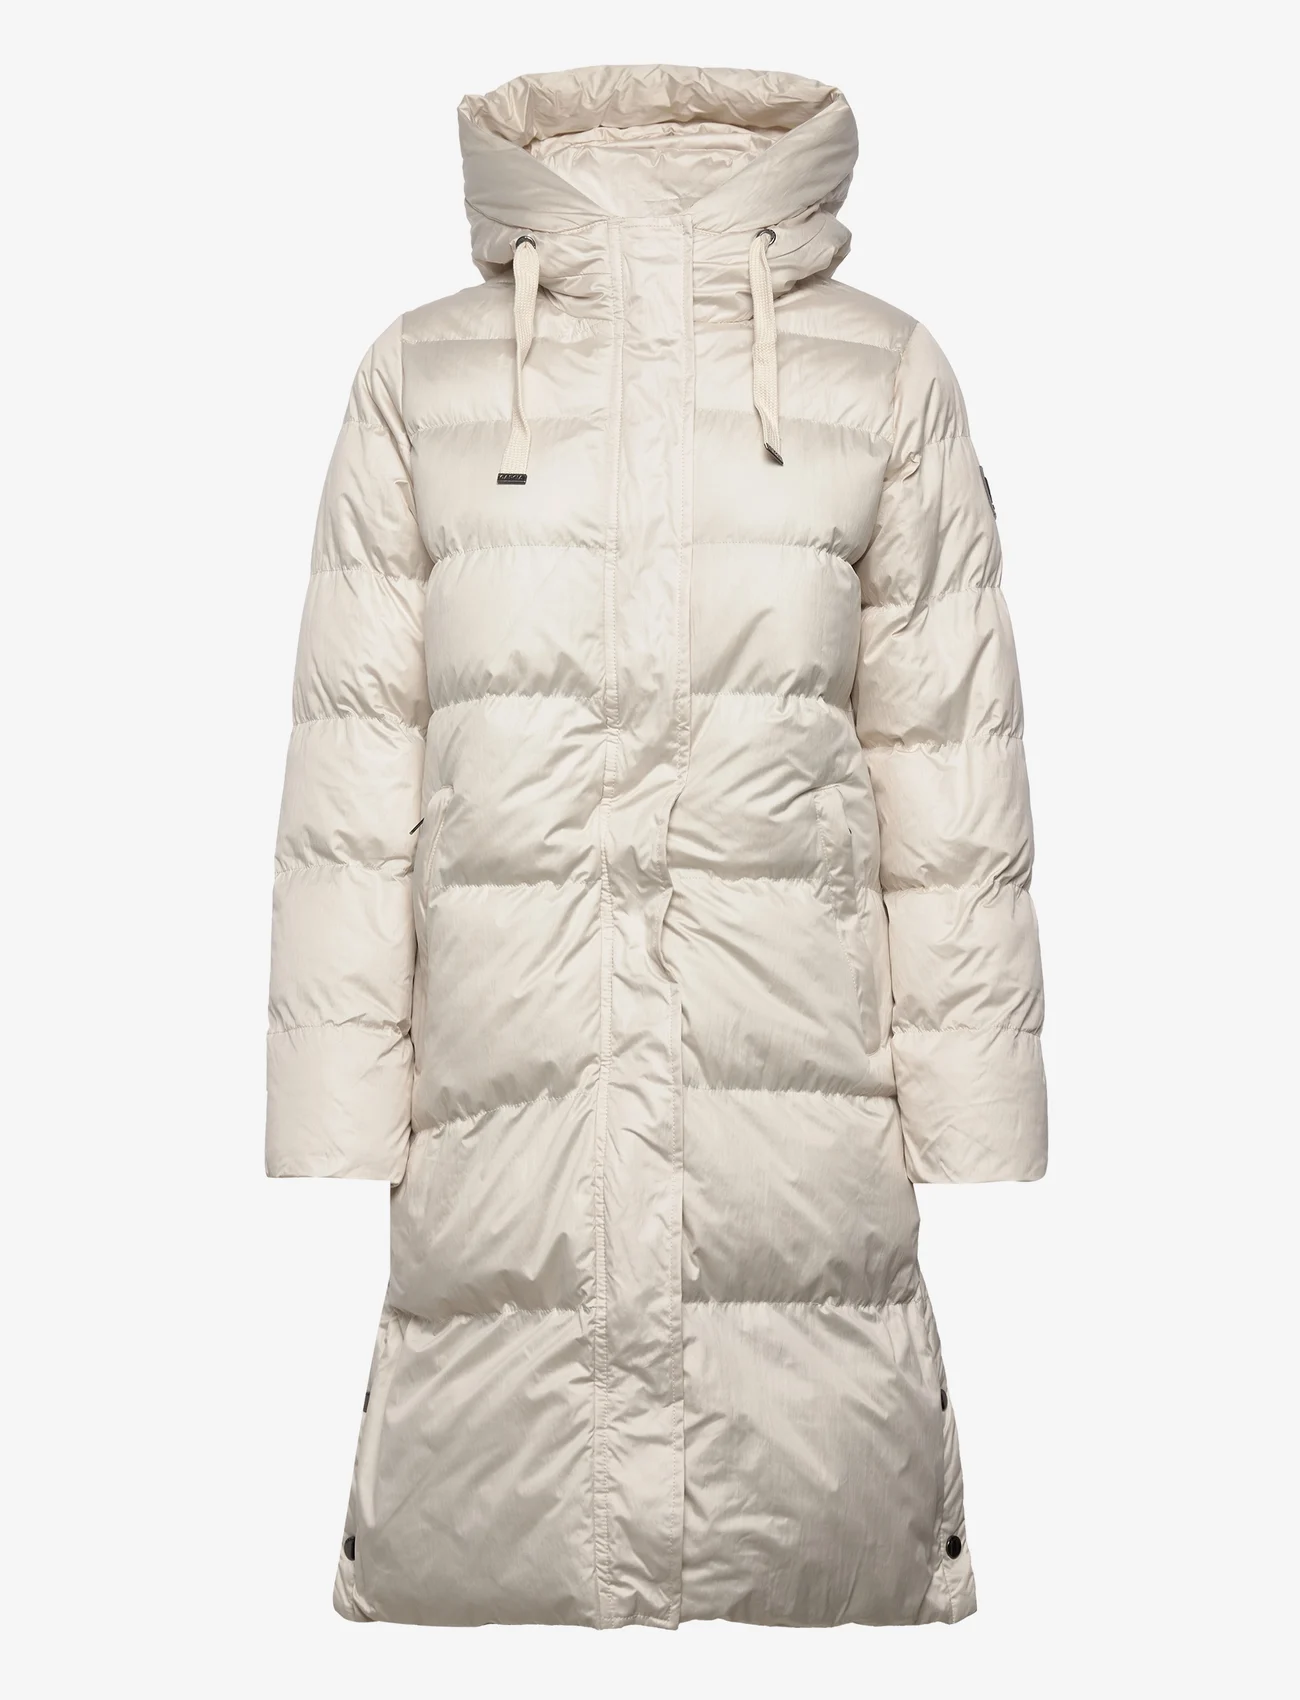 Ladies Outdoor Jacket - 149.99 €. Koop Gewatteerde jassen van Garcia op Boozt.com. Snelle levering & eenvoudig retour